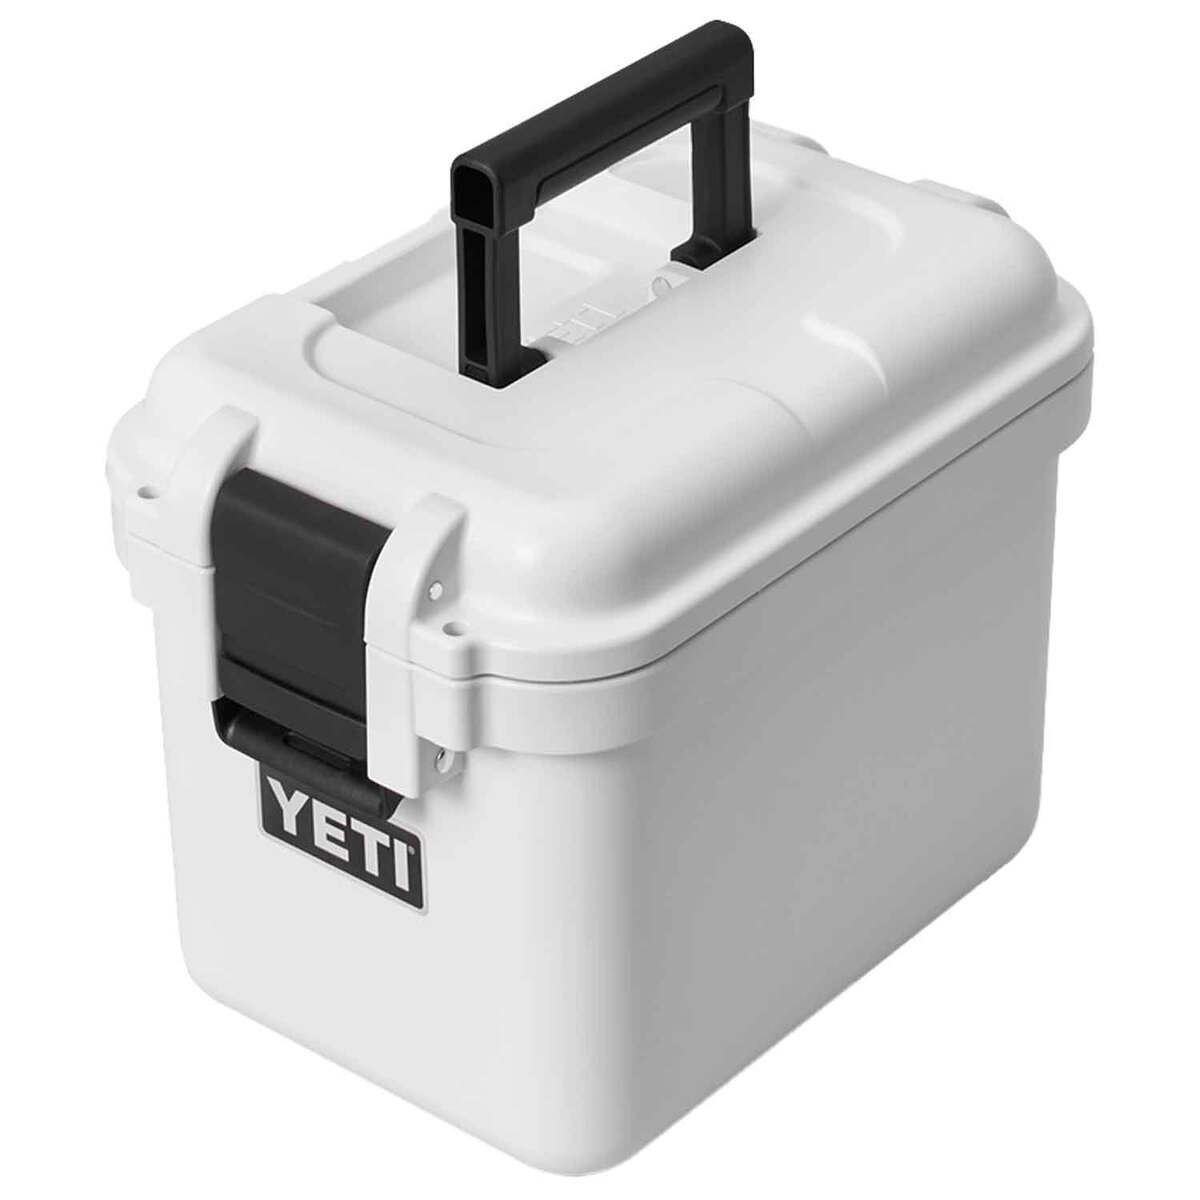 https://www.sportsmans.com/medias/yeti-loadout-gobox-15-gear-case-white-1797949-1.jpg?context=bWFzdGVyfGltYWdlc3wzNjczNHxpbWFnZS9qcGVnfGgxZC9oNTgvMTEyMzE4MjA3NzU0NTQvMTc5Nzk0OS0xX2Jhc2UtY29udmVyc2lvbkZvcm1hdF8xMjAwLWNvbnZlcnNpb25Gb3JtYXR8M2Q5ZTUzMDZmMDQzZDczYzUxOThkZTE5ZDg2ZTIzNWJmMGJmOGNhMDZiMTA3MDFlN2MzOGQyYWI2YzQyMmQ3ZQ